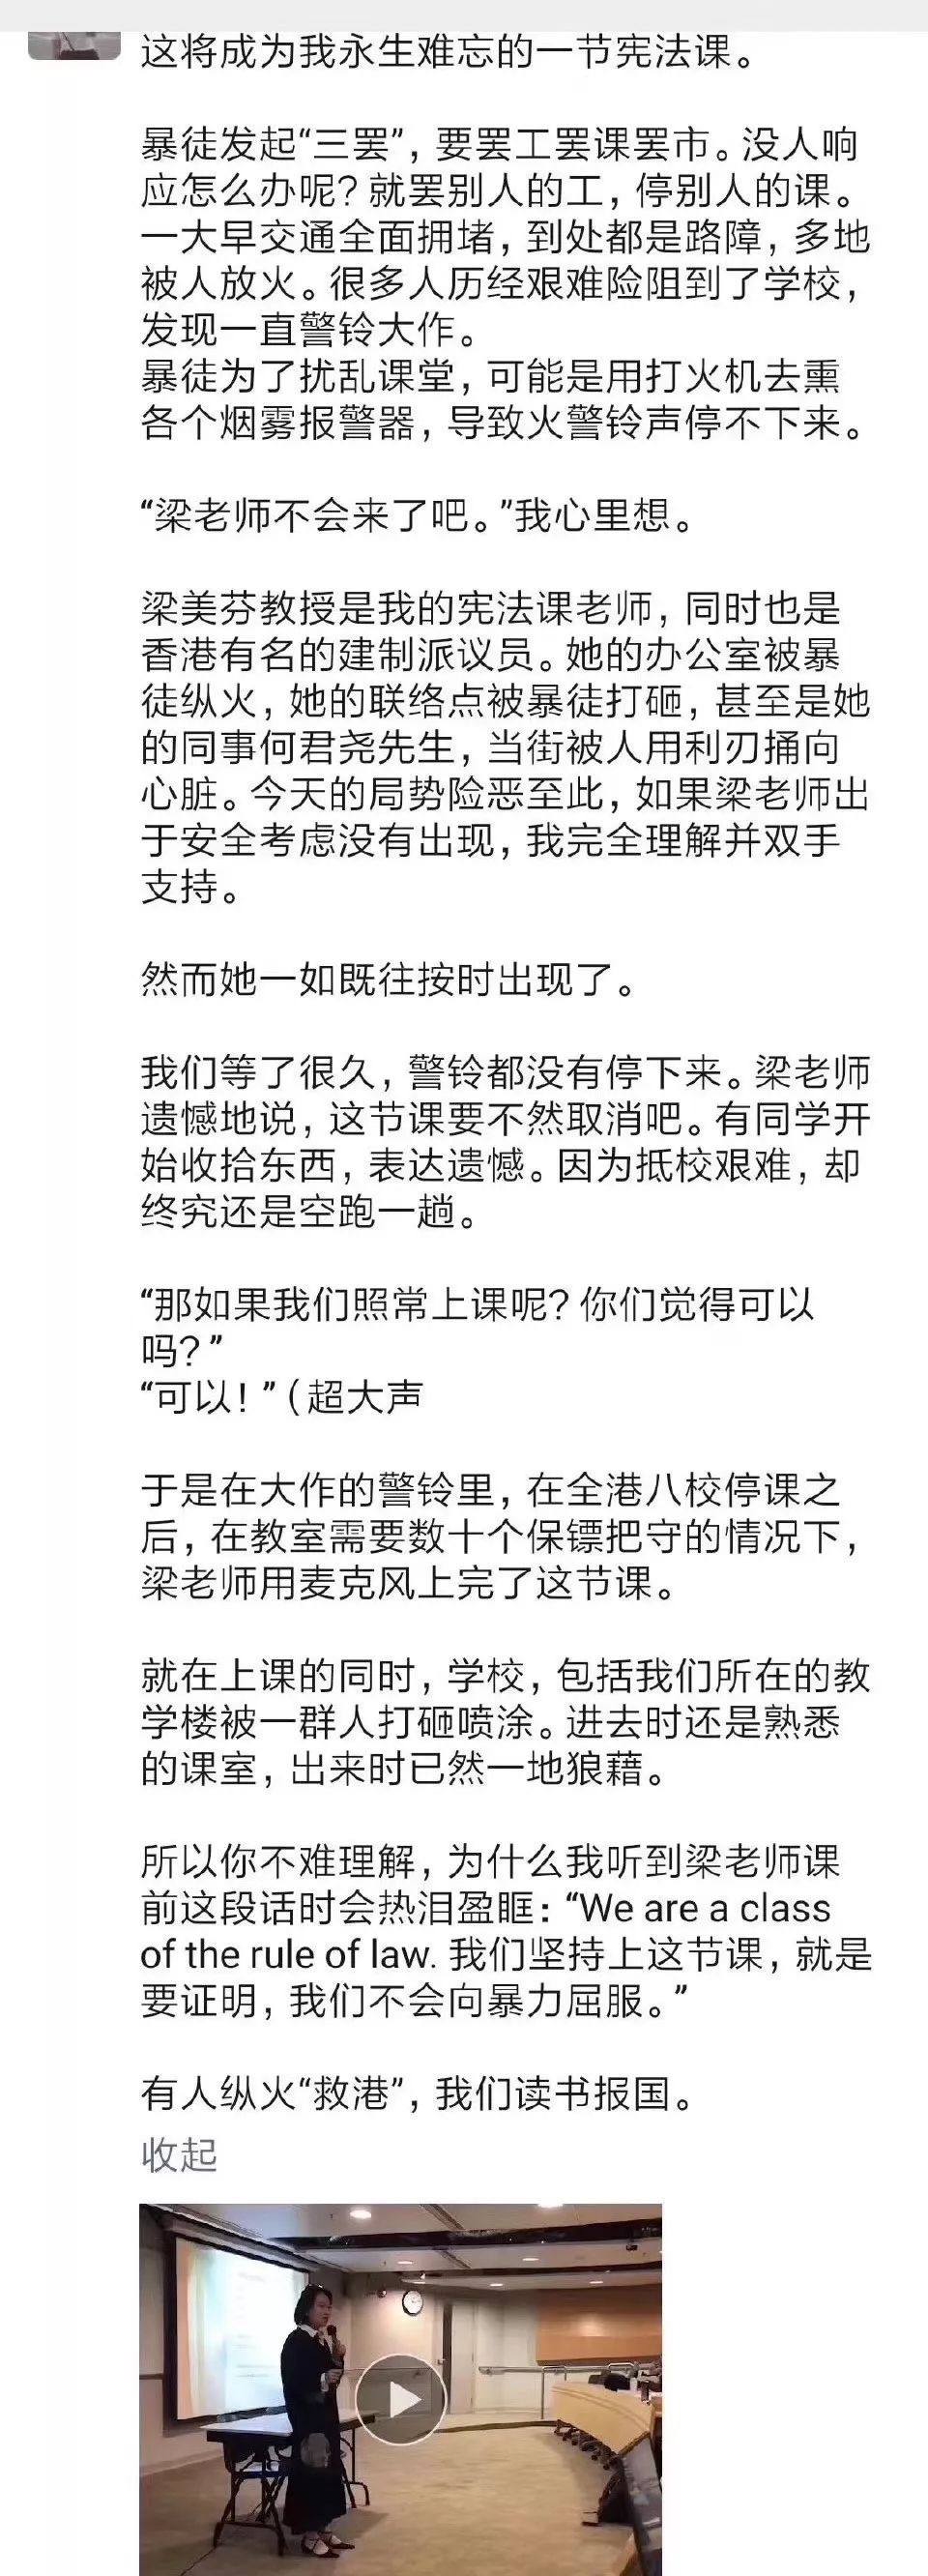 香港的昼与夜 维港三公子 微信公众号文章阅读 Wemp